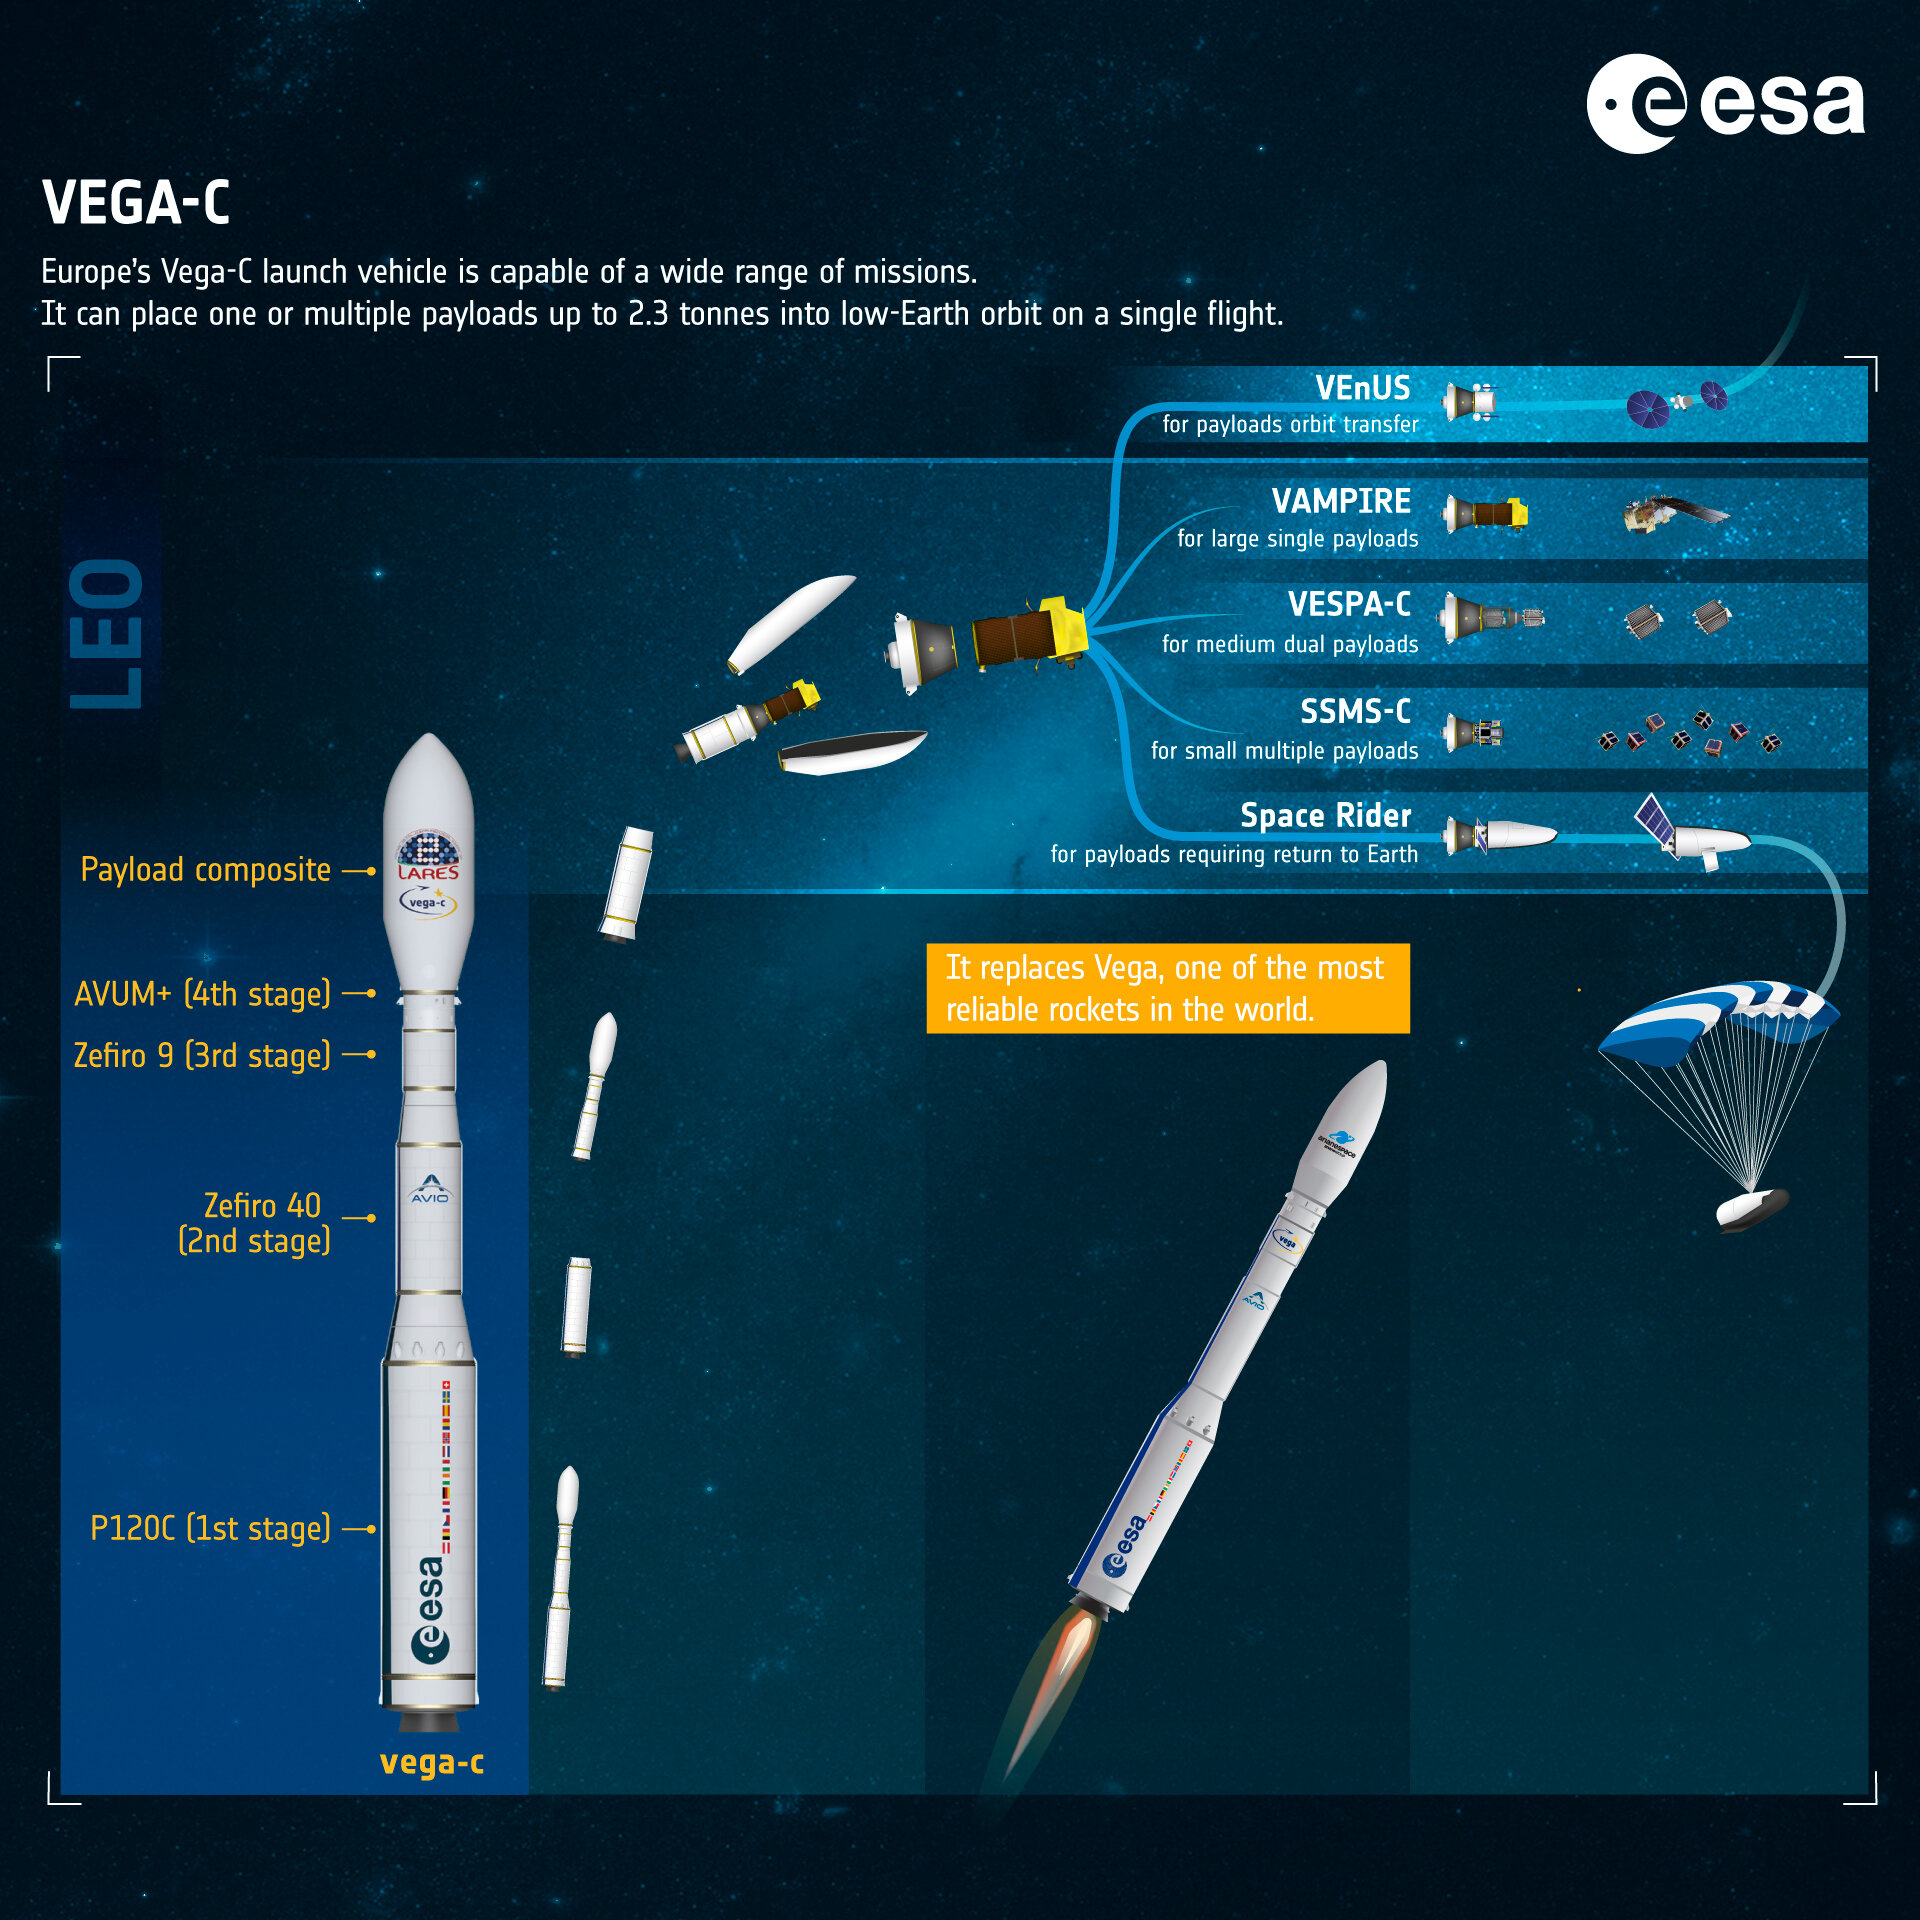 Vega-C features